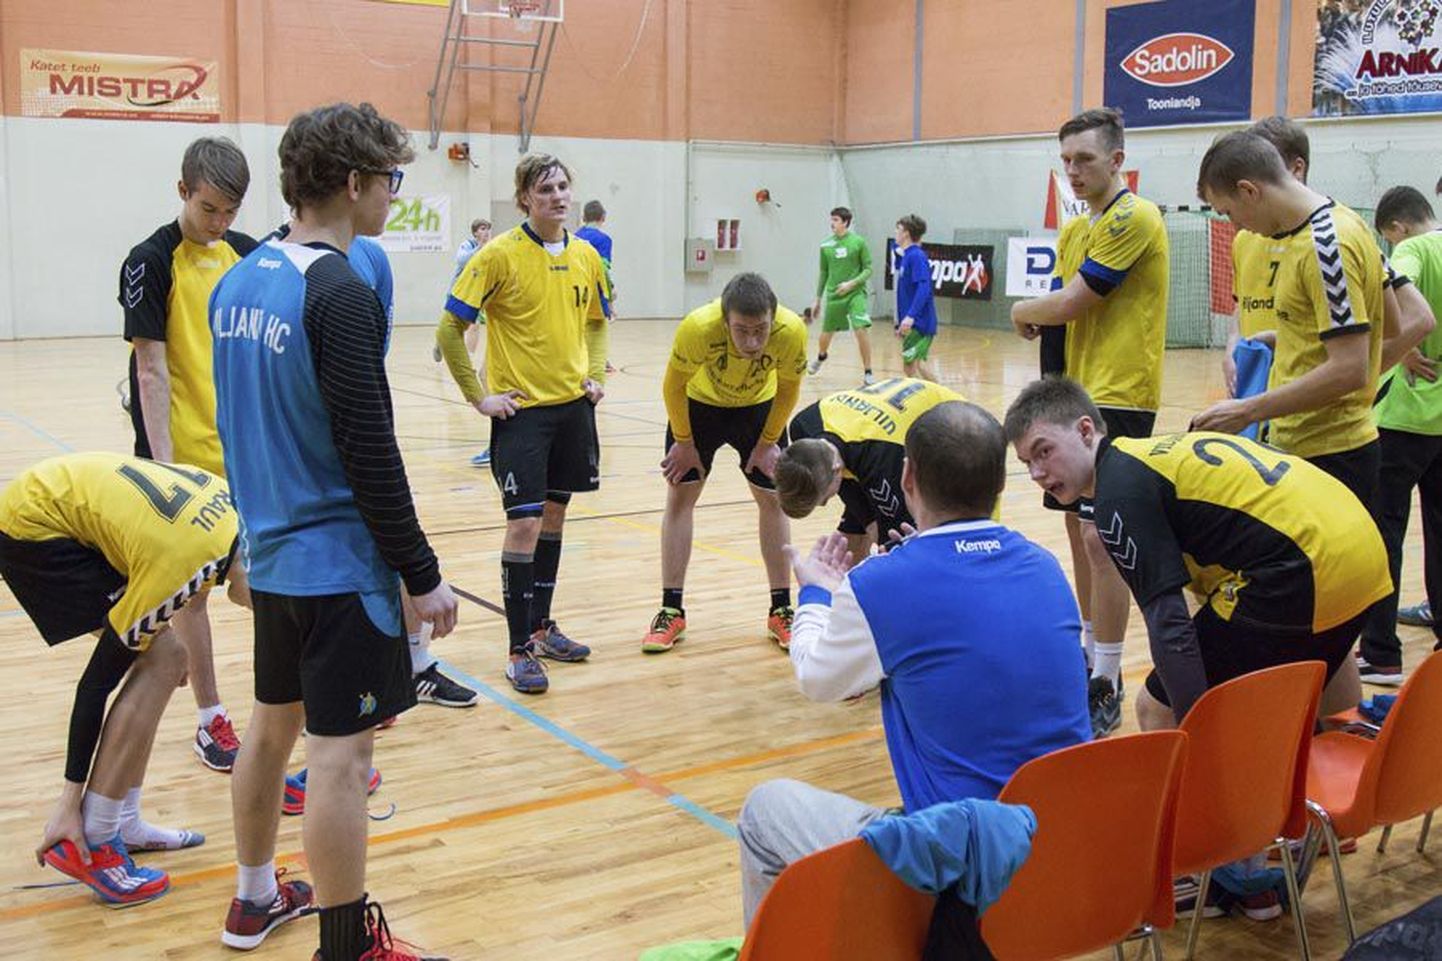 Viljandi A-klassi käsipallimeeskond sai Eesti meistrivõistluste esimeses ringis kolm võitu ja läheb turniiri teisele etapile vastu täiseduga.